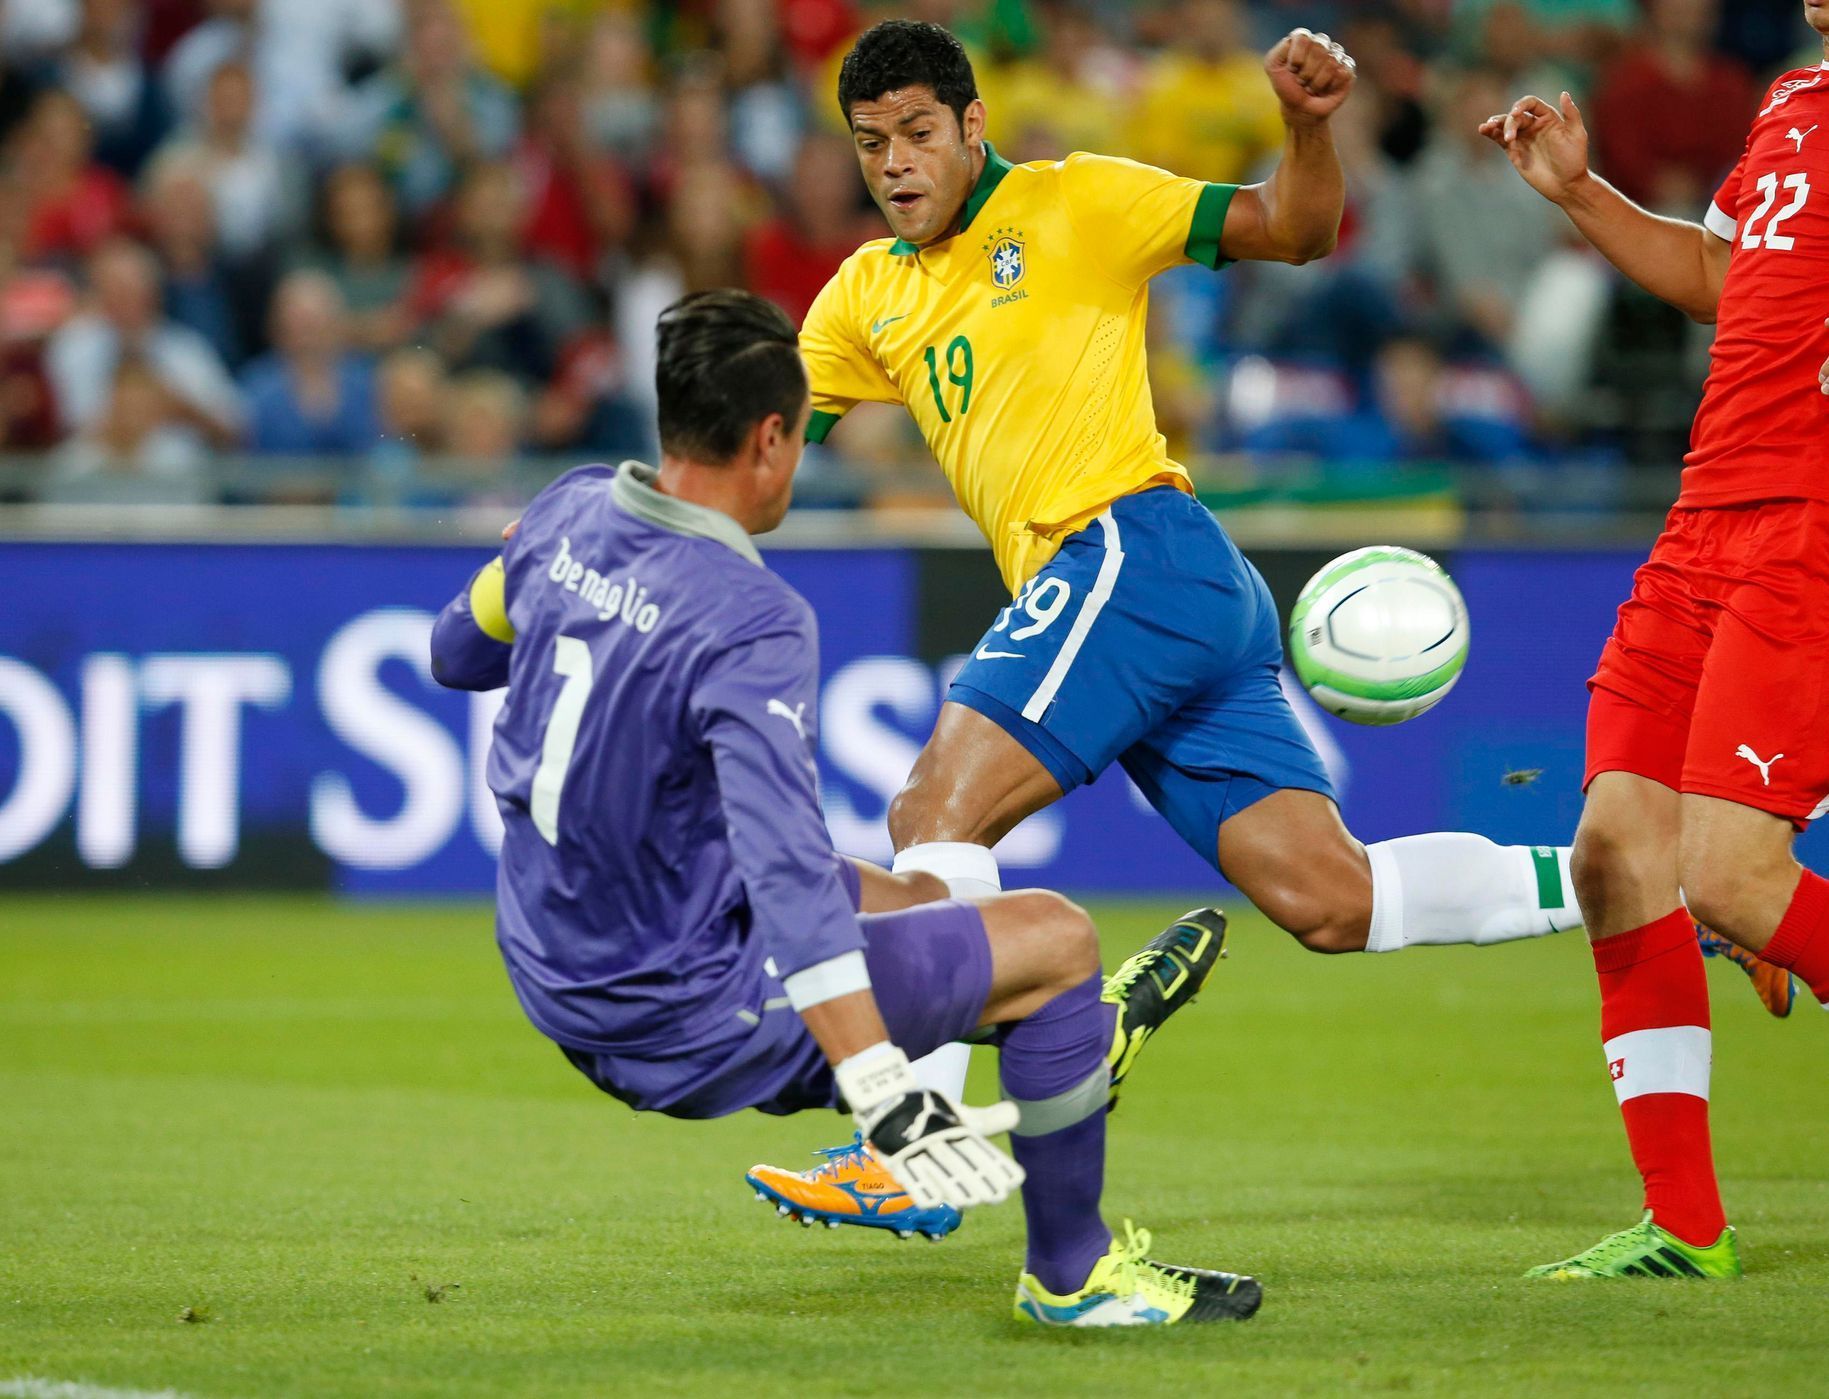 Fotbal, Švýcarsko - Brazílie: Diego Benaglio - Hulk